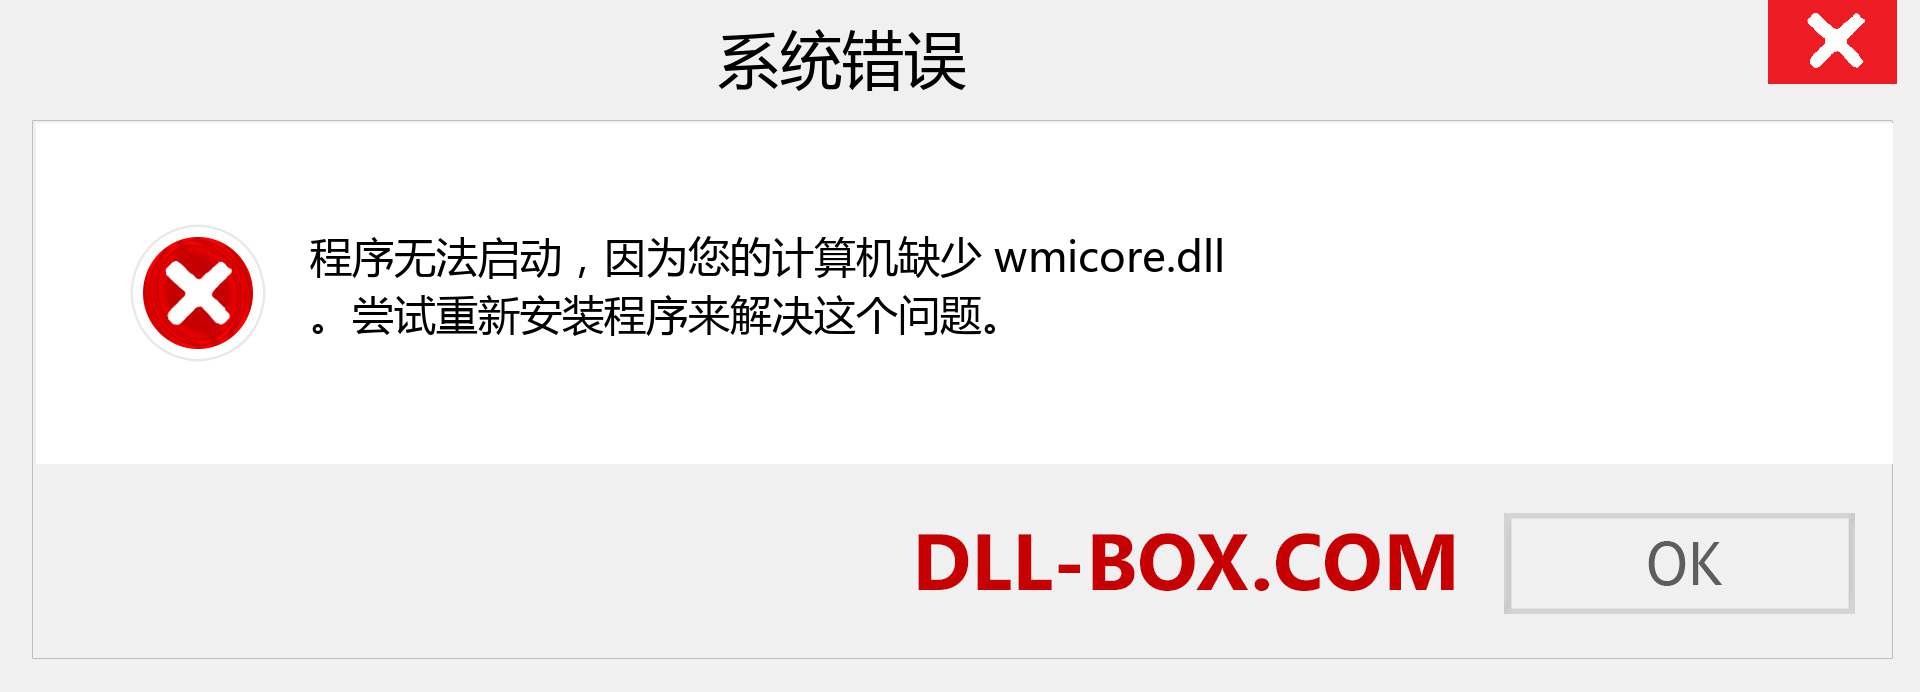 wmicore.dll 文件丢失？。 适用于 Windows 7、8、10 的下载 - 修复 Windows、照片、图像上的 wmicore dll 丢失错误